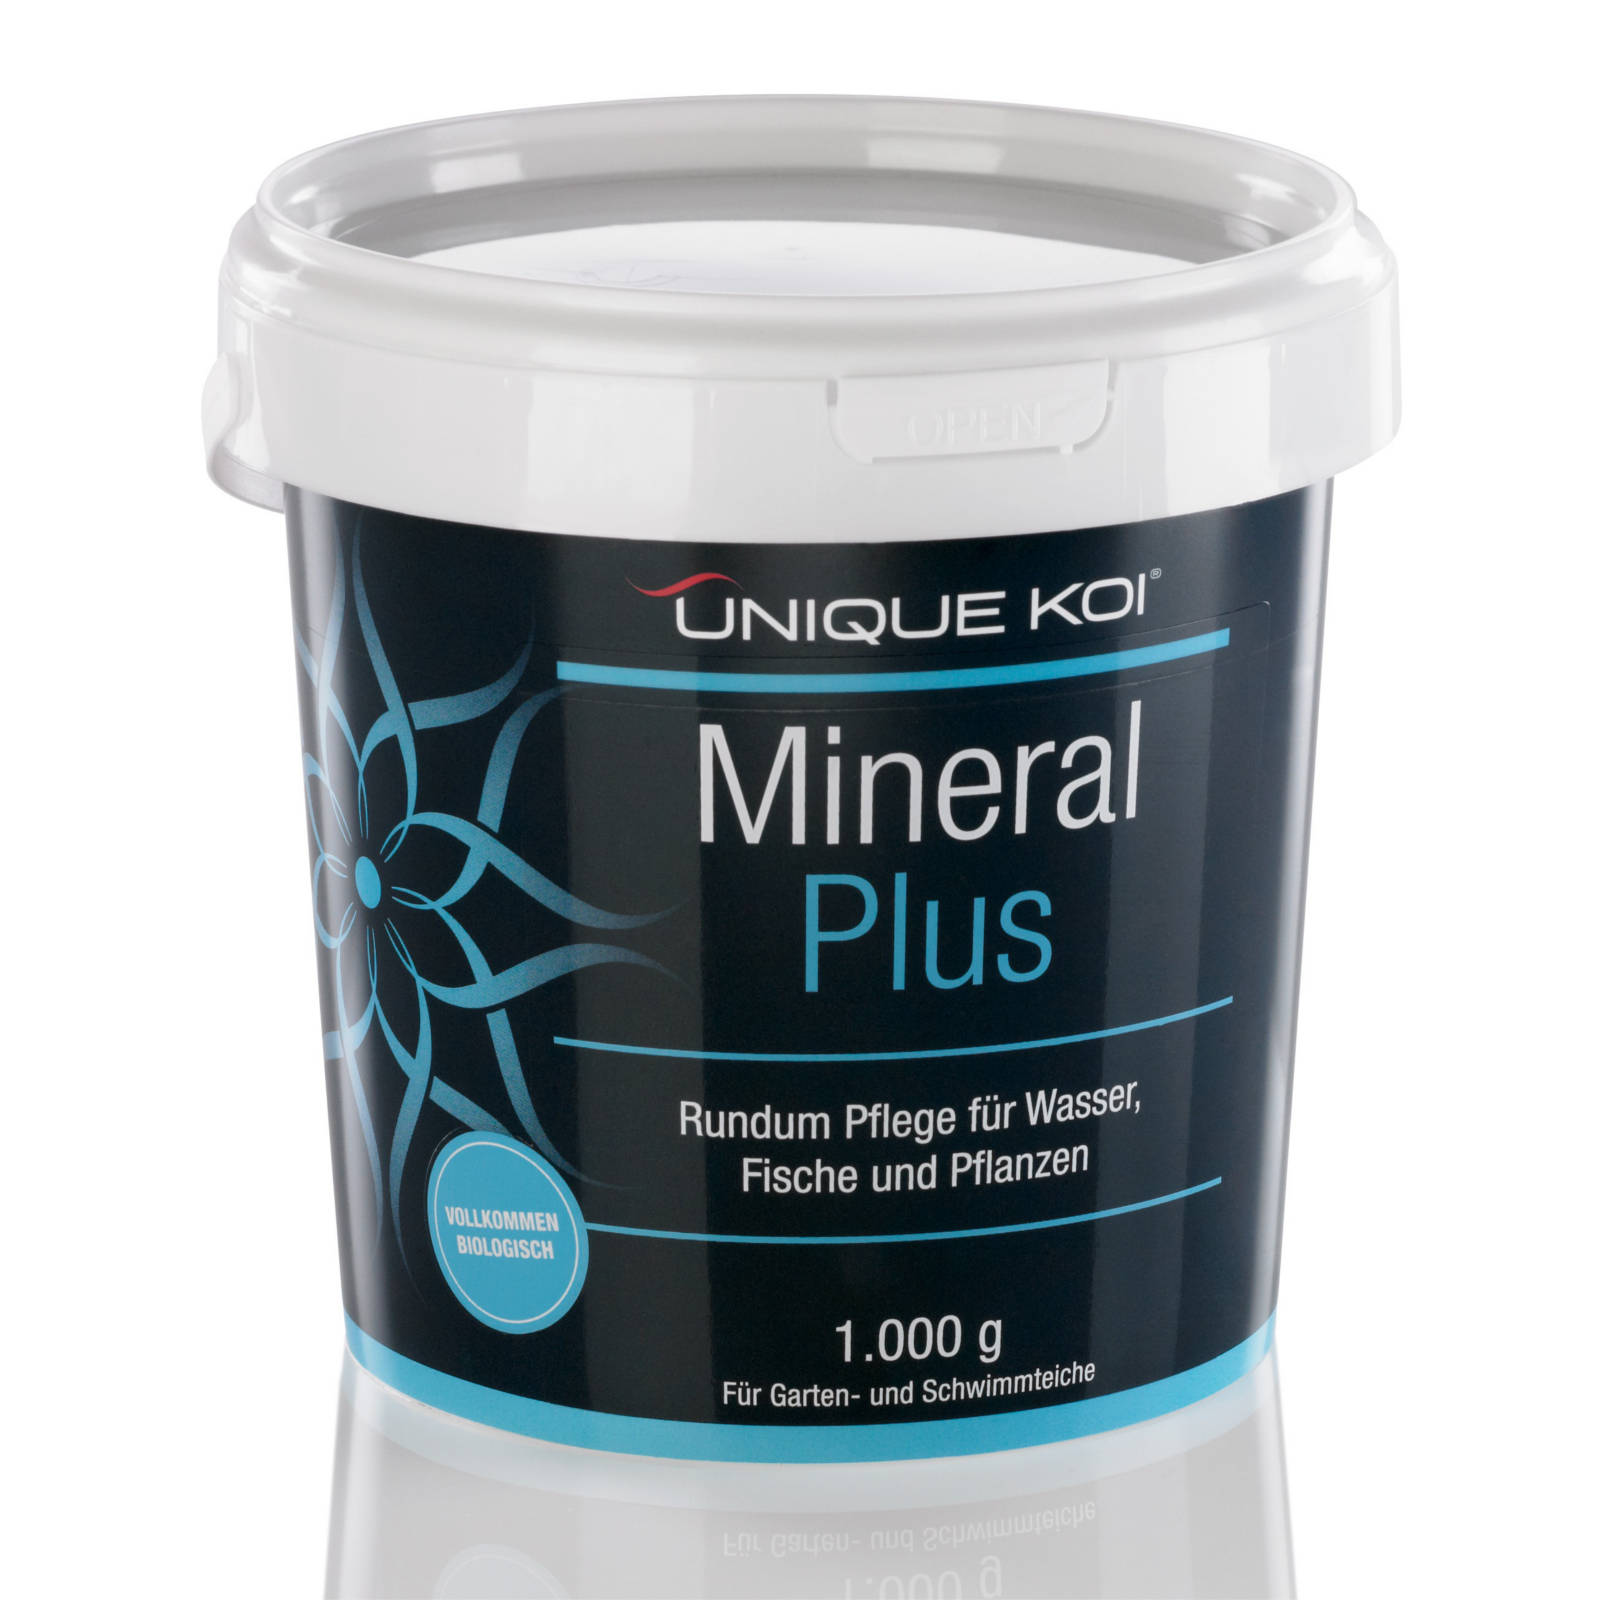 Unique Koi Mineral Plus Rundum Pflege für Wasser, Fische und Pflanzen 500g